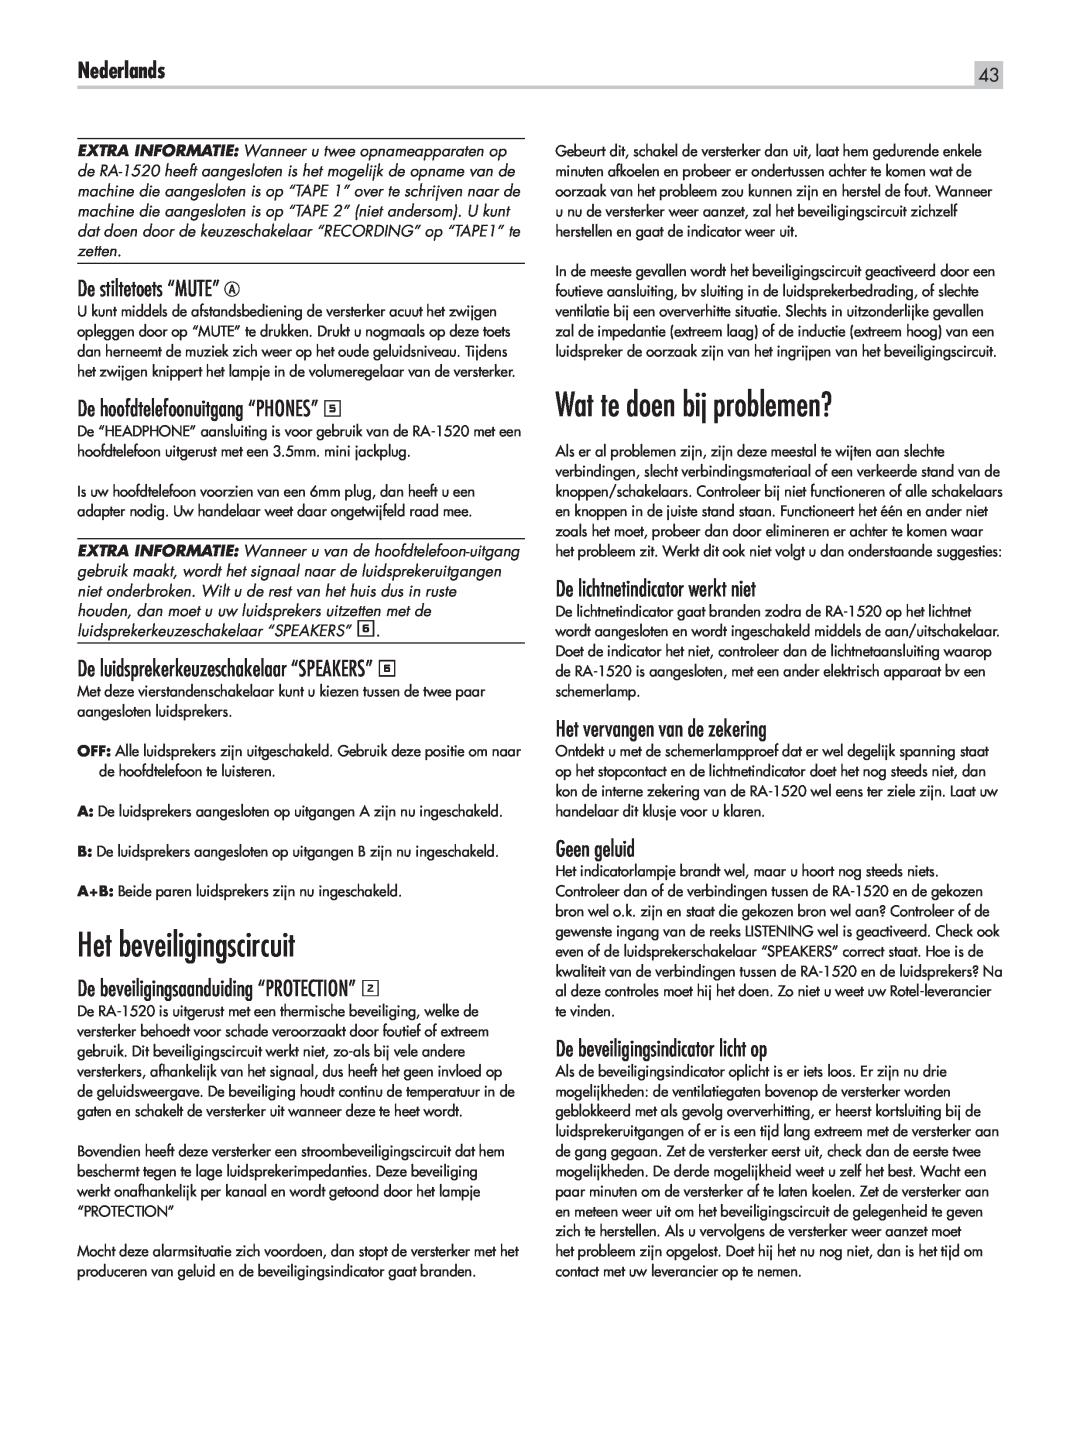 Rotel RA-1520 Het beveiligingscircuit, Wat te doen bij problemen?, Nederlands, De stiltetoets “MUTE” A, Geen geluid 